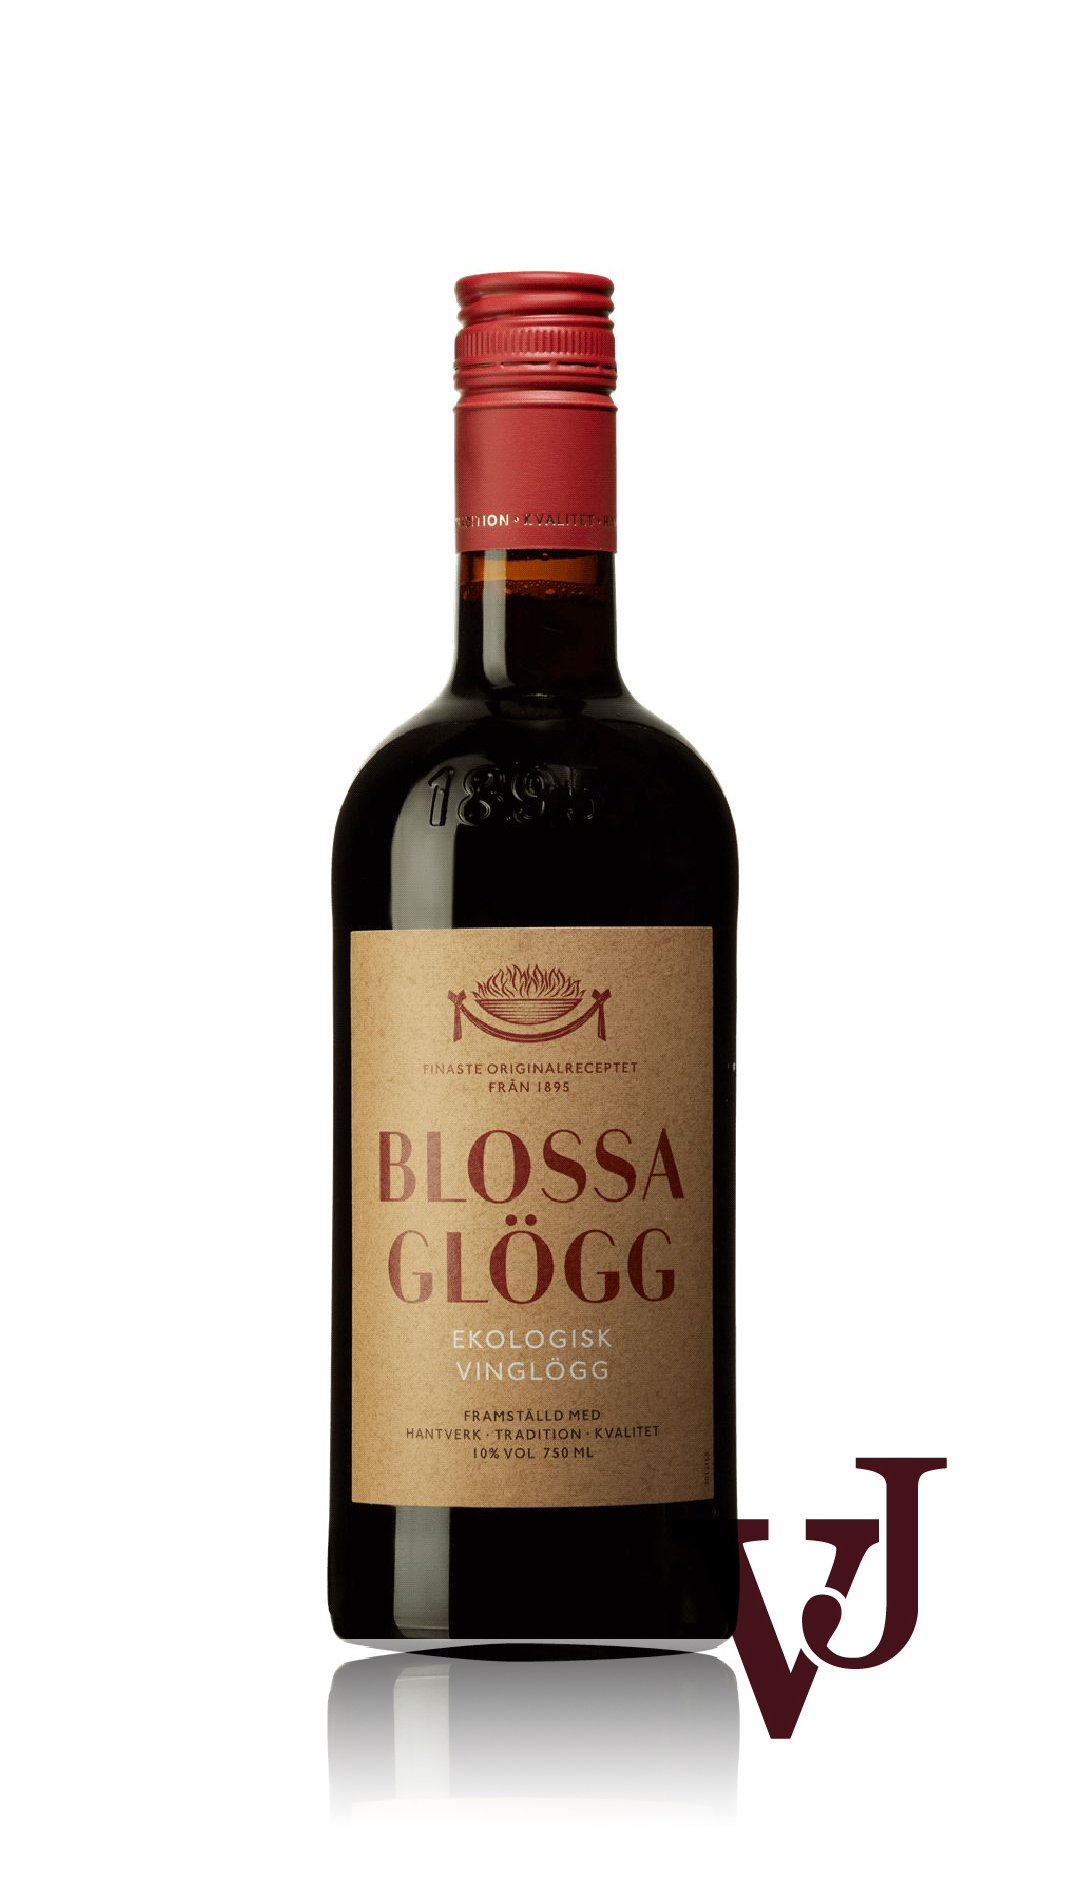 Övrigt vin - Blossa Ekologisk vinglögg röd artikel nummer 9016801 från producenten Altia från området Finland